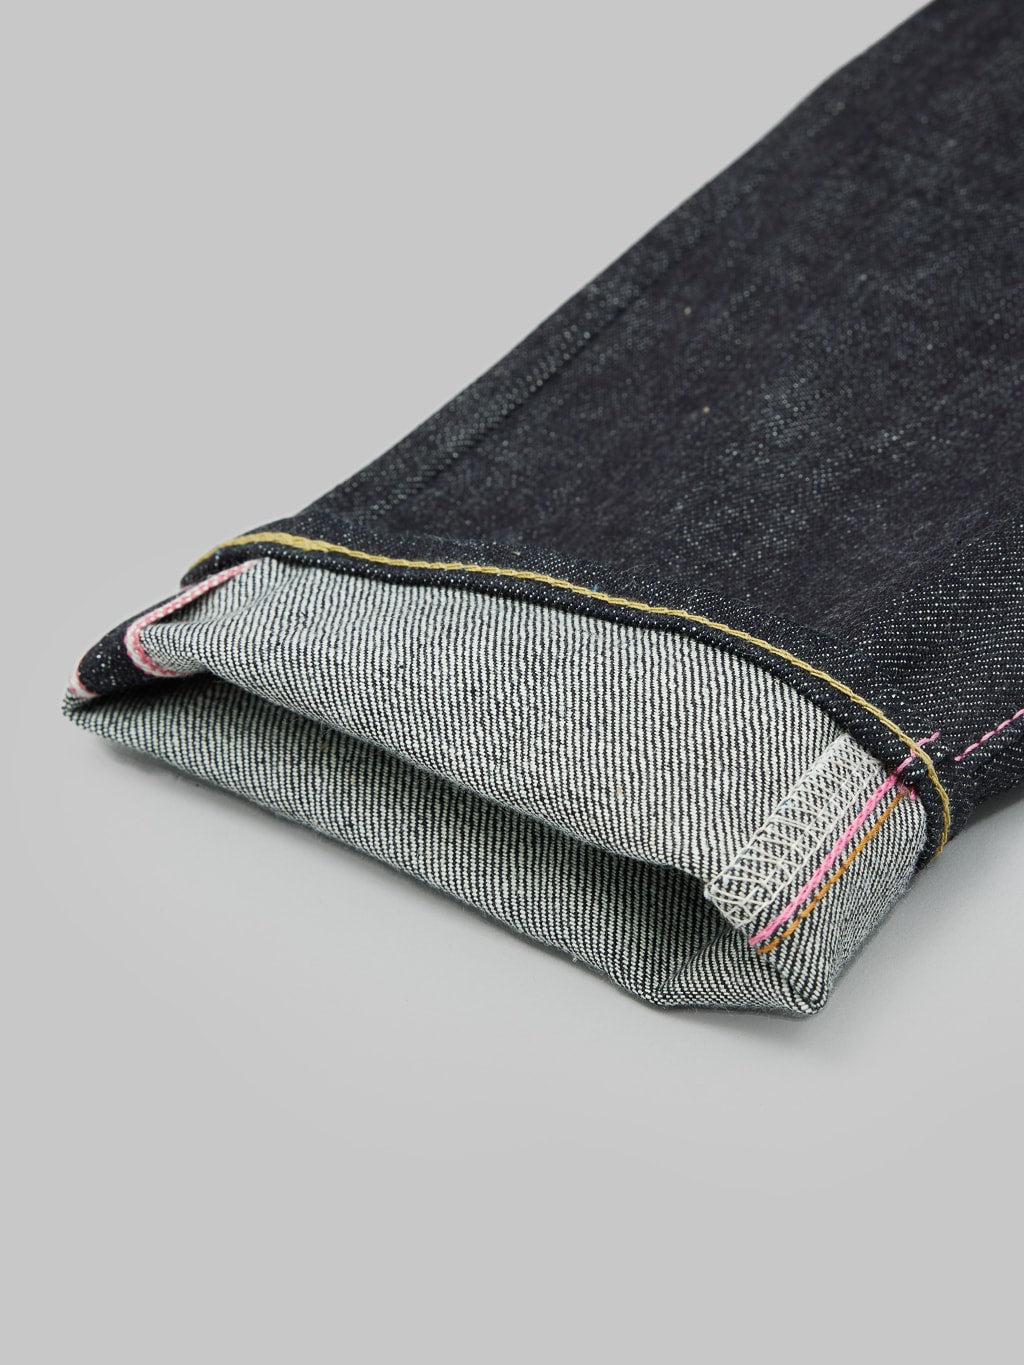 momotaro jeans 0405 v selvedge denim high tapered white weft